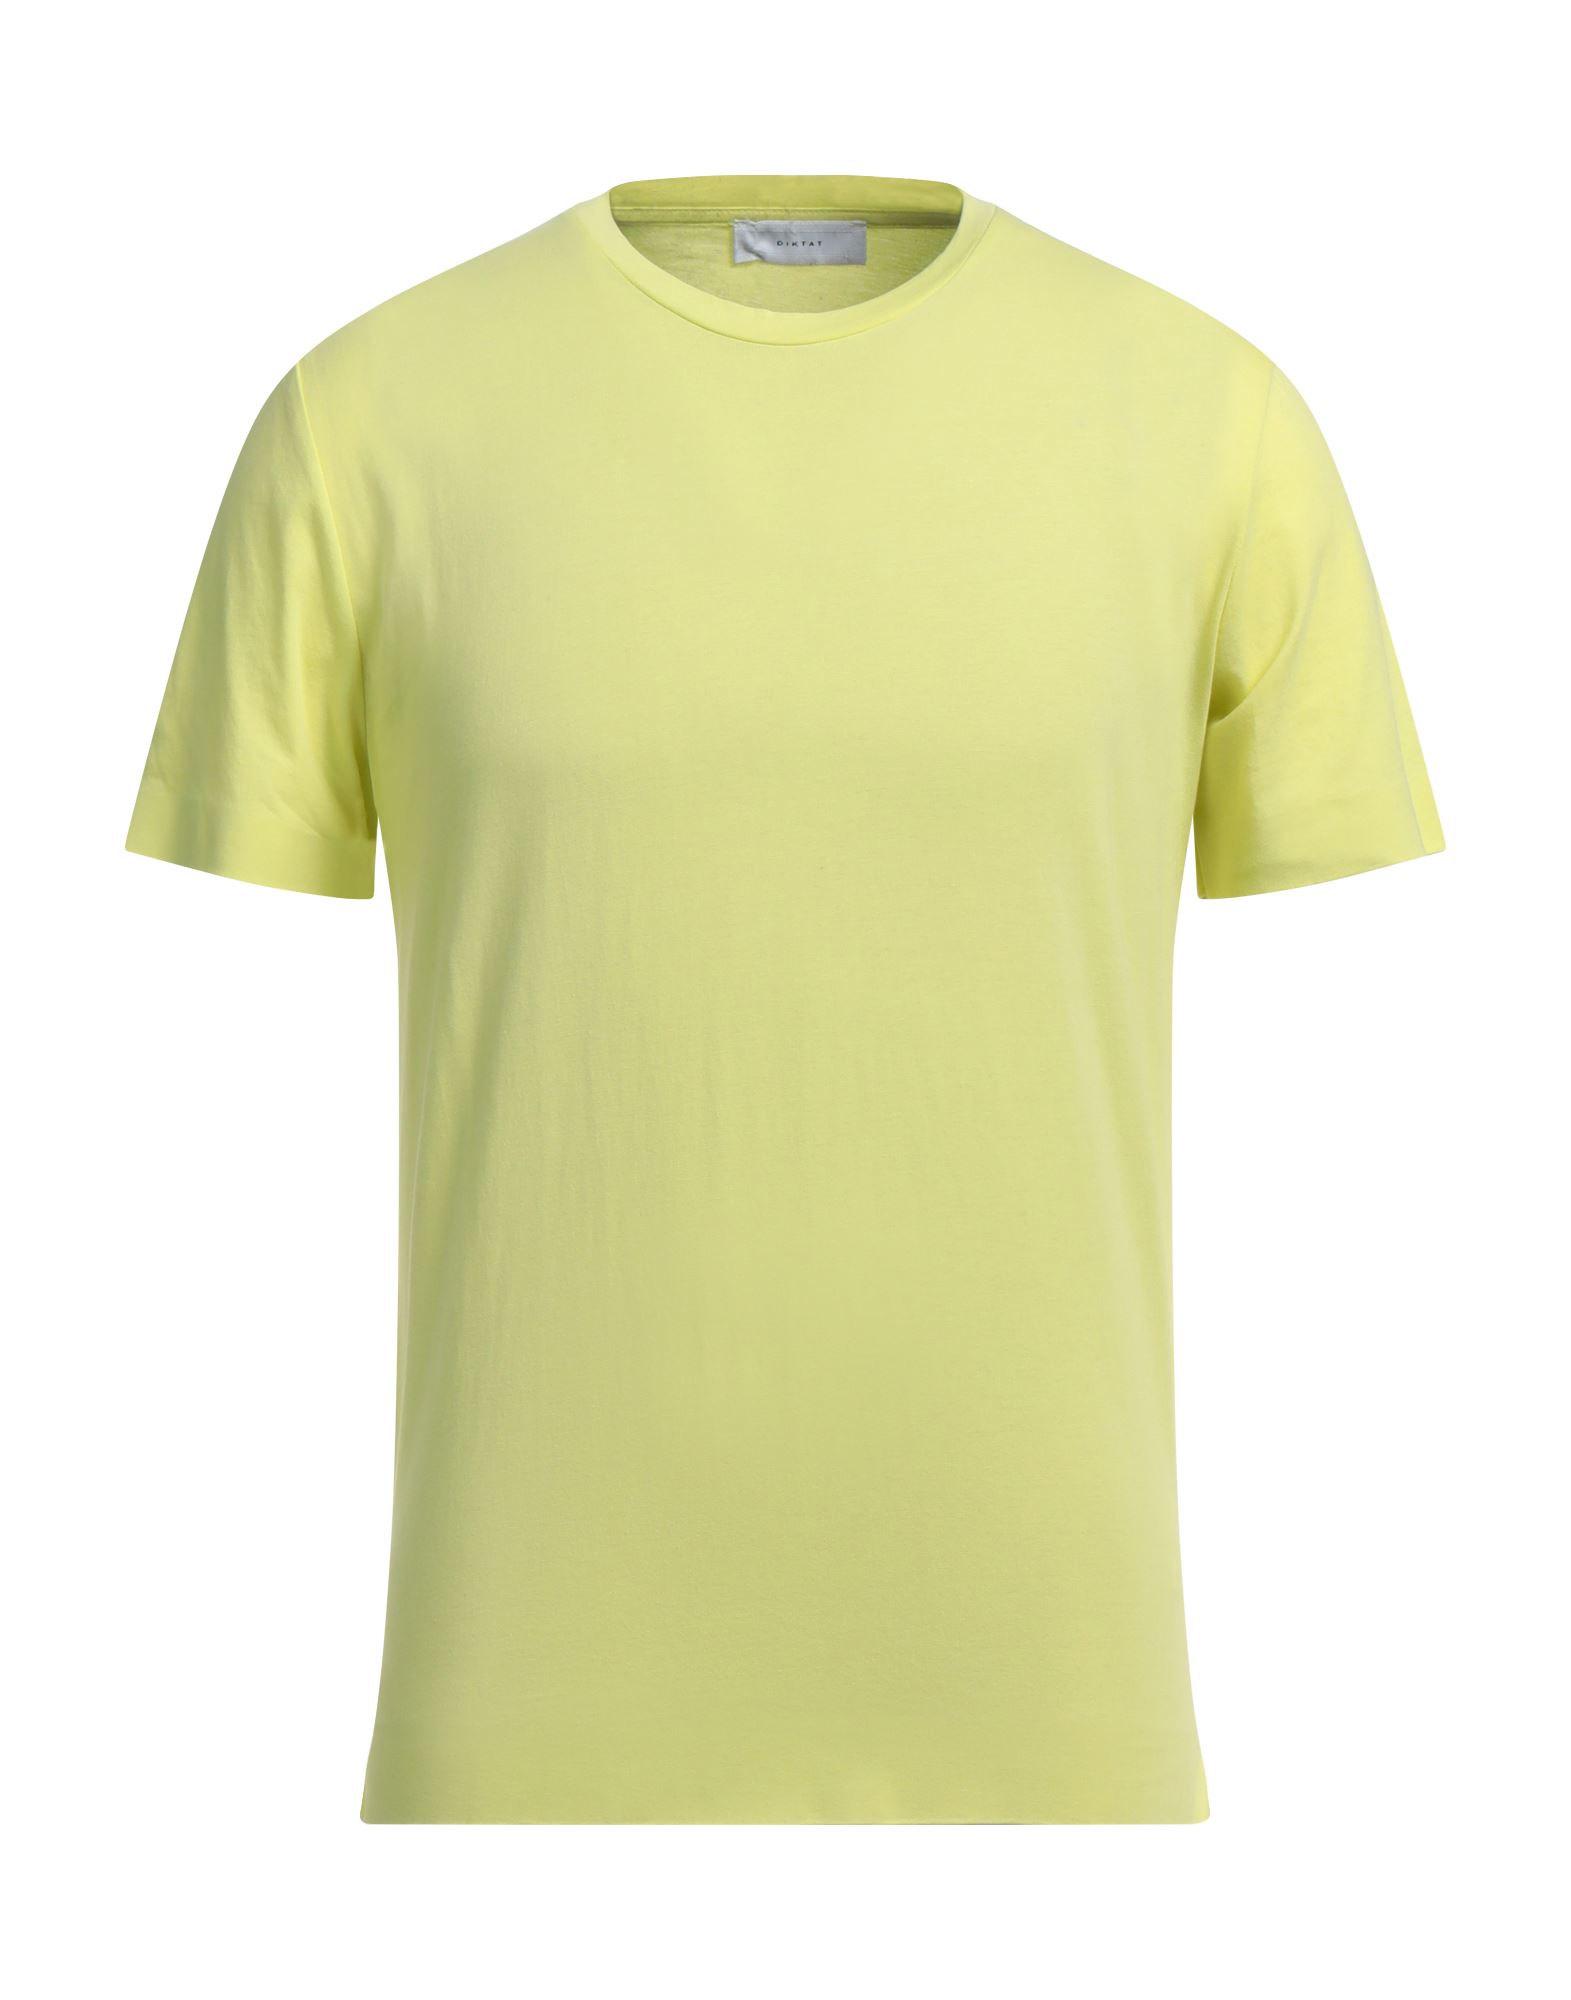 Diktat T-shirts In Yellow